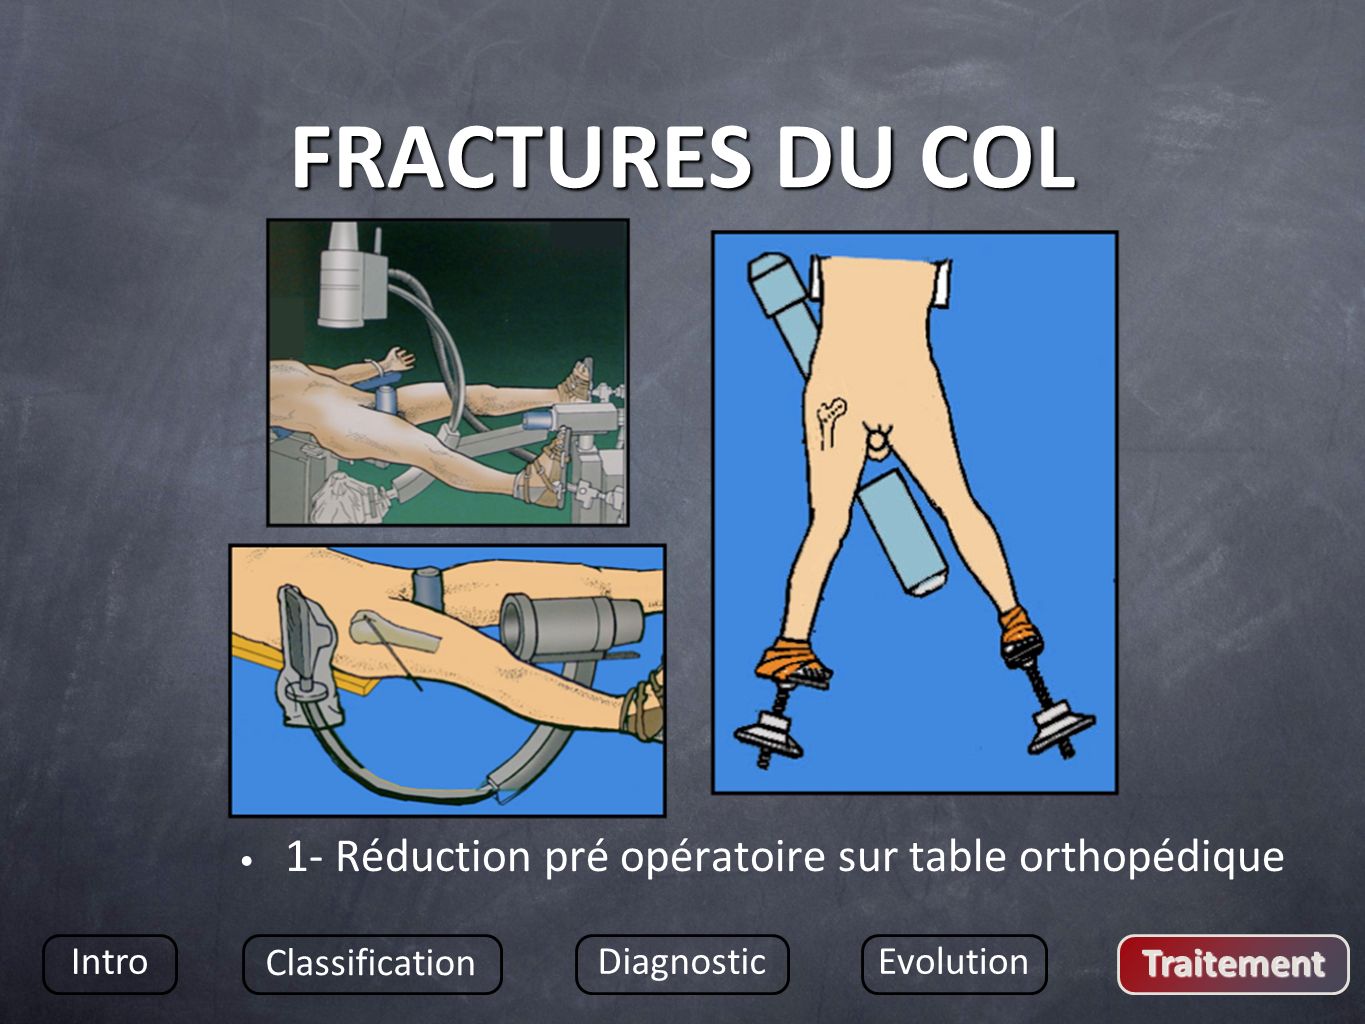 FRACTURES DU COL 1- Réduction pré opératoire sur table orthopédique